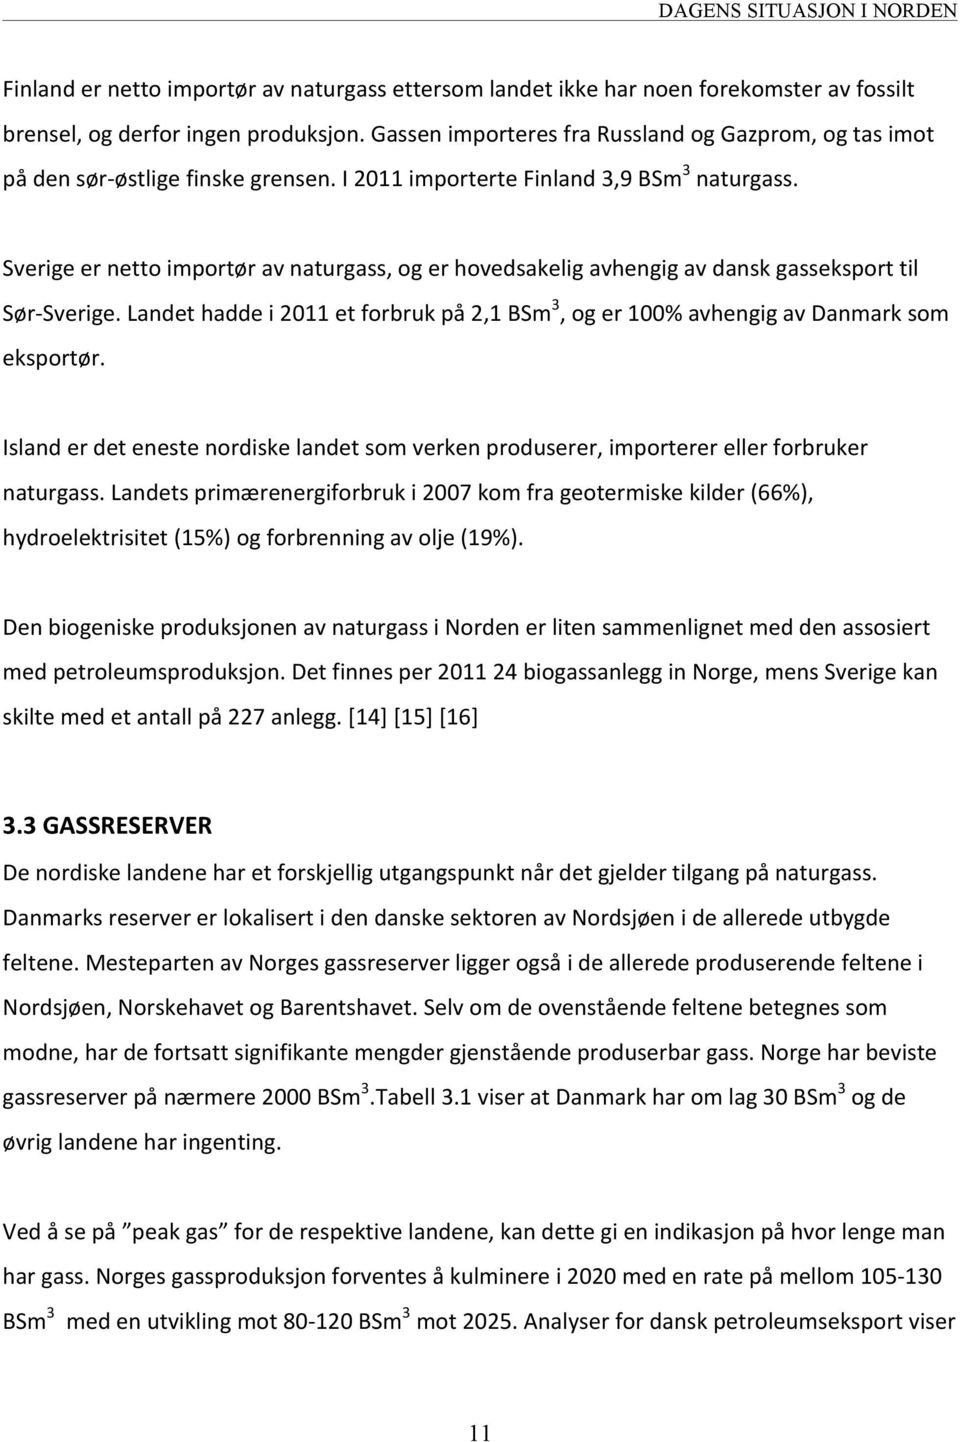 Sverige er netto importør av naturgass, og er hovedsakelig avhengig av dansk gasseksport til Sør- Sverige. Landet hadde i 2011 et forbruk på 2,1 BSm 3, og er 100% avhengig av Danmark som eksportør.